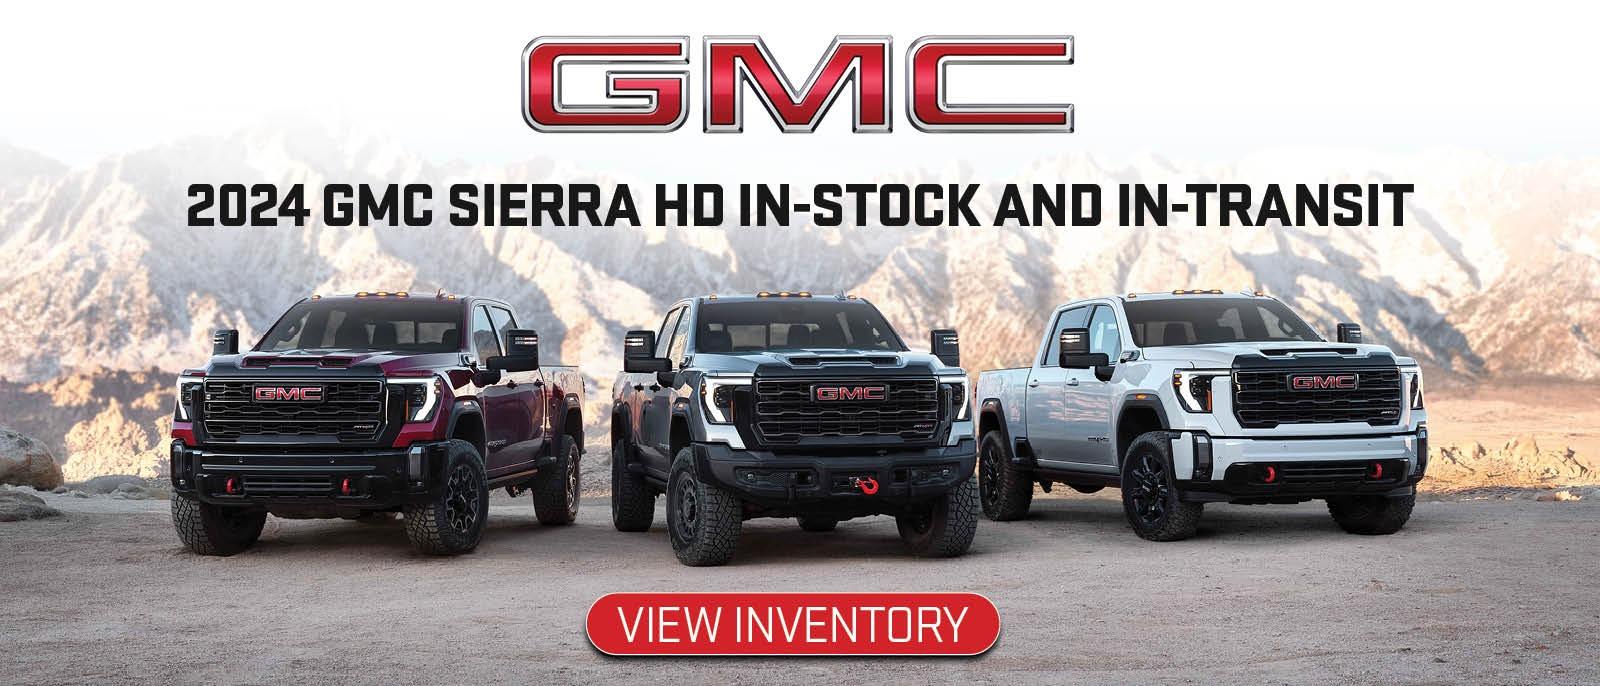 2024 GMC Sierra HD in-stock & in-transit inventory